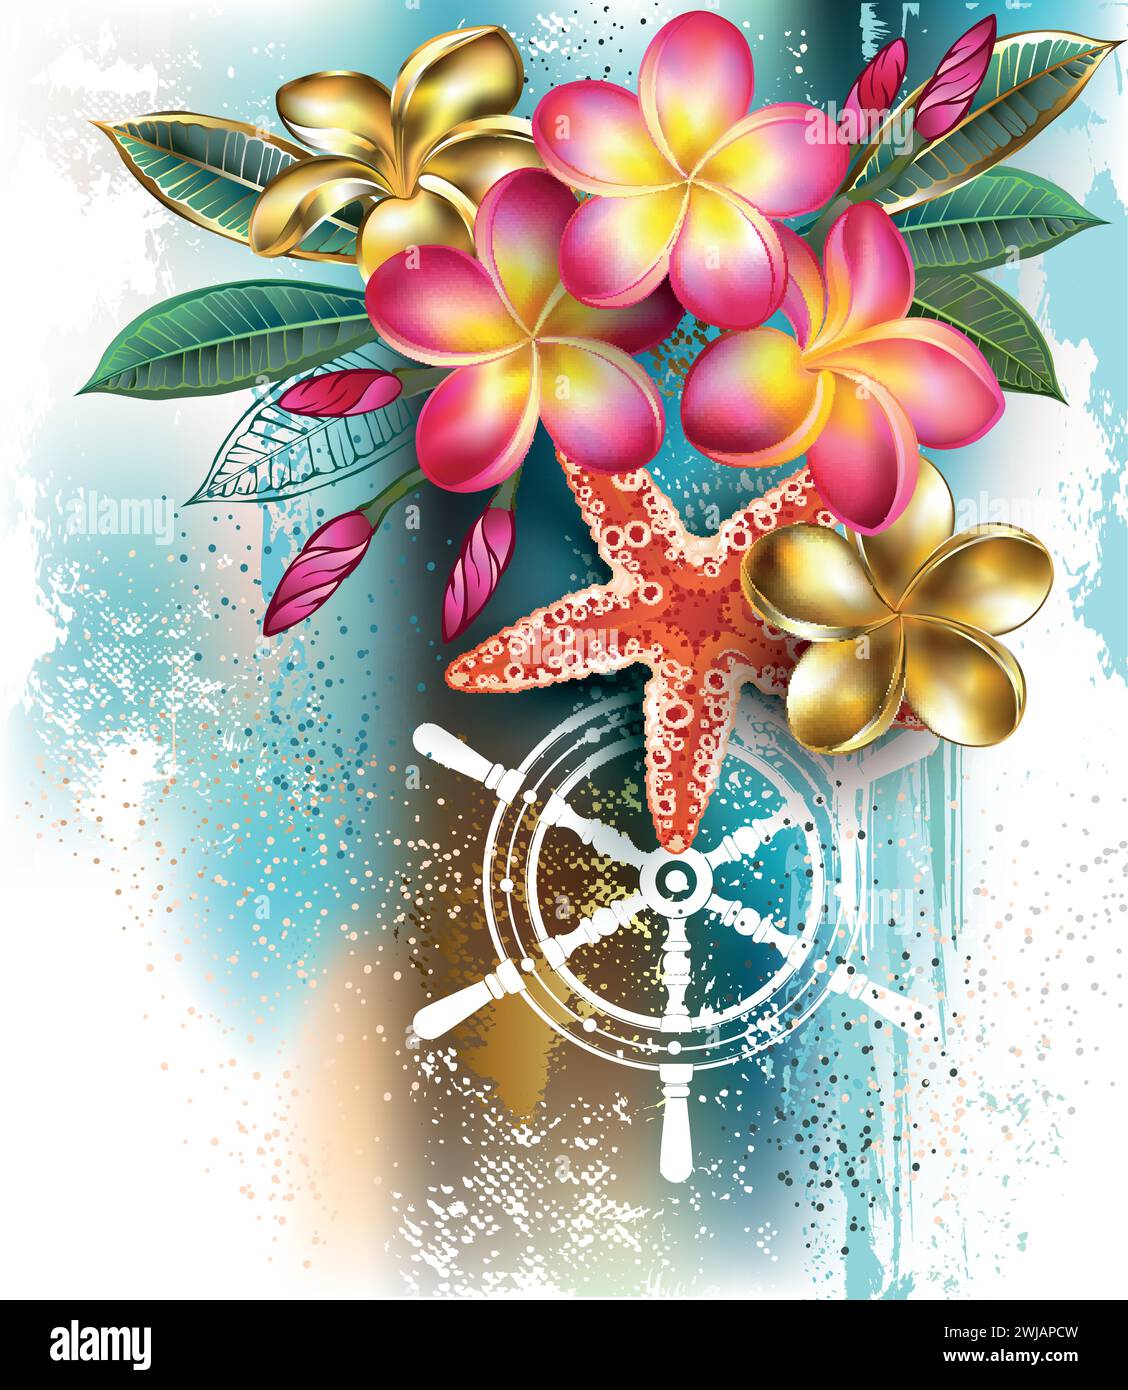 Fiori plumeria in fiore rosa e oro con stelle marine rosse su pittoresco sfondo blu con macchie di vernice blu e bianca. Plumeri in fiore Illustrazione Vettoriale